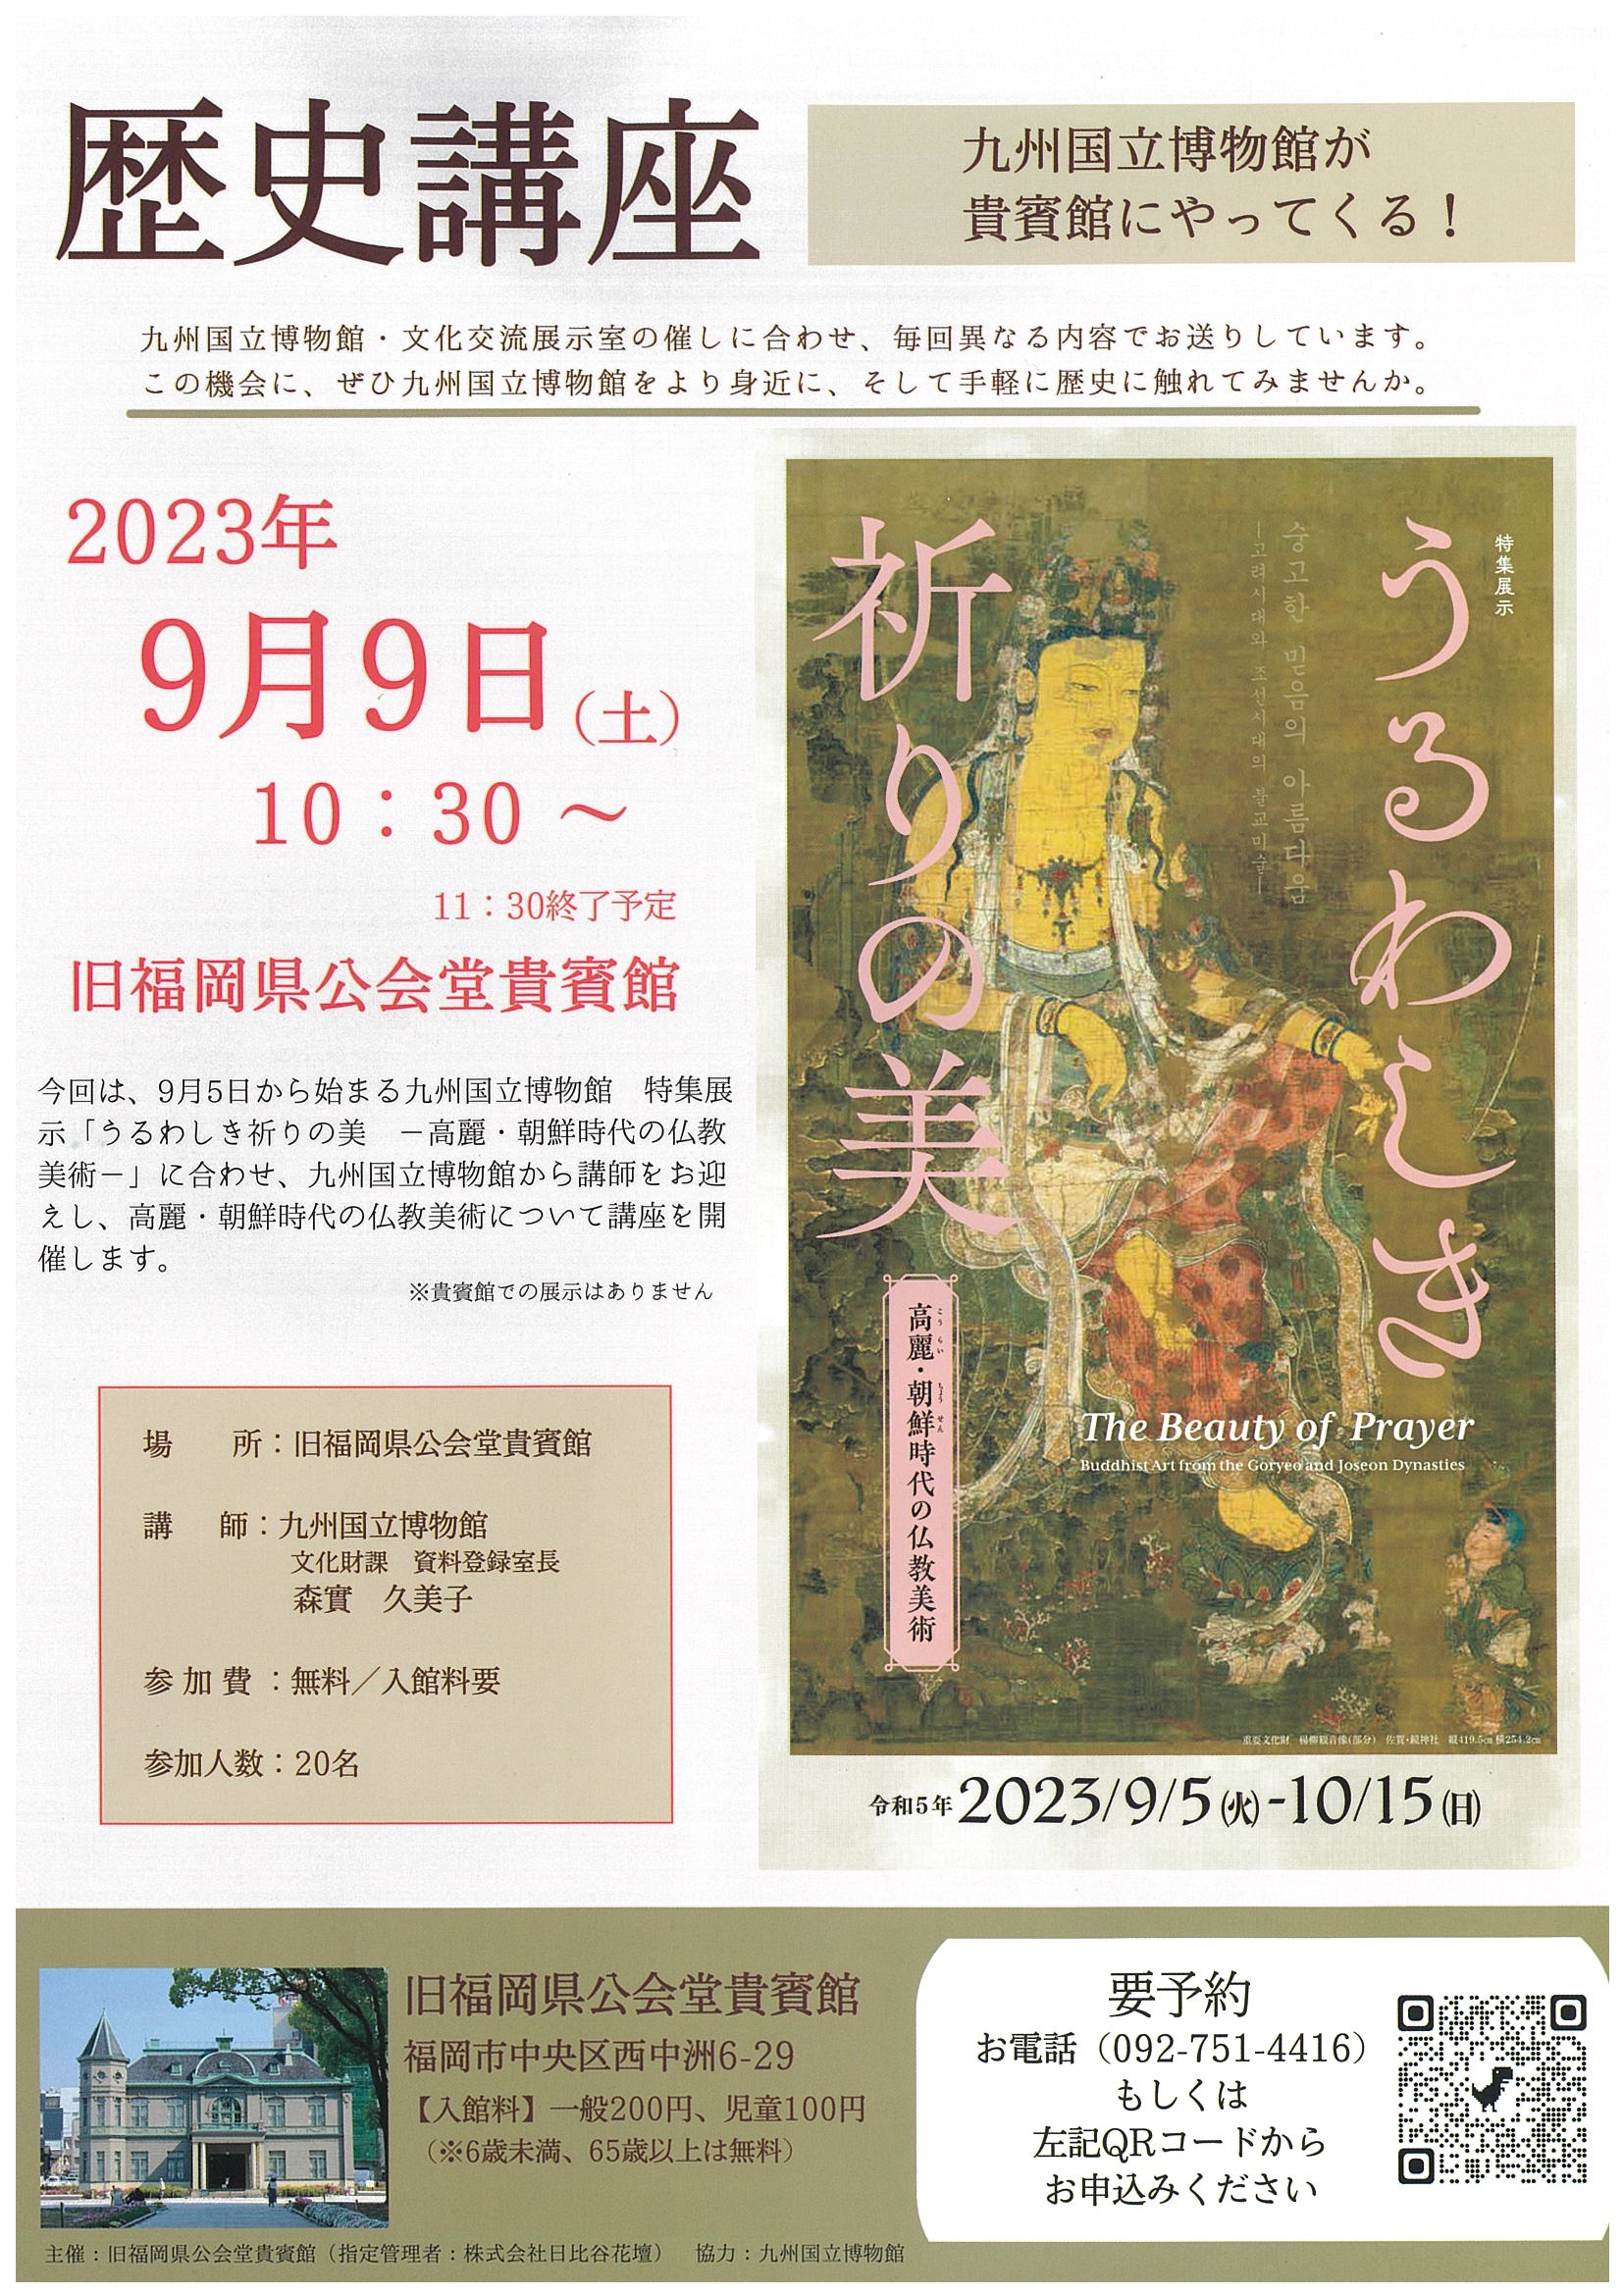 旧福岡県公会堂貴賓館　歴史講座「うるわしき祈りの美」開催のお知らせ